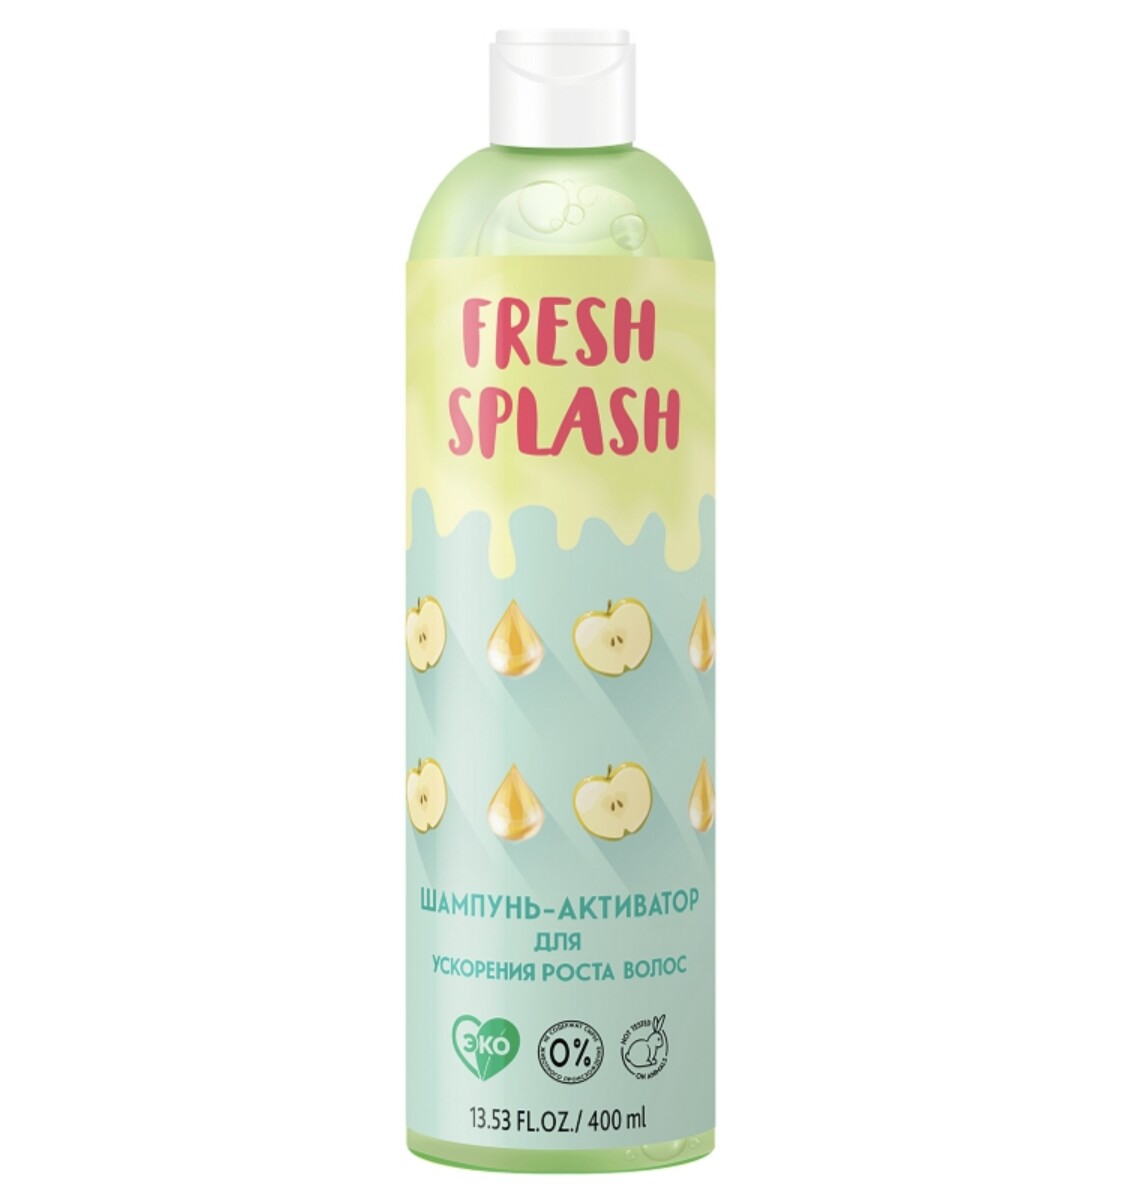 Fresh splash шампунь-активатор для ускорения роста волос, 400 мл